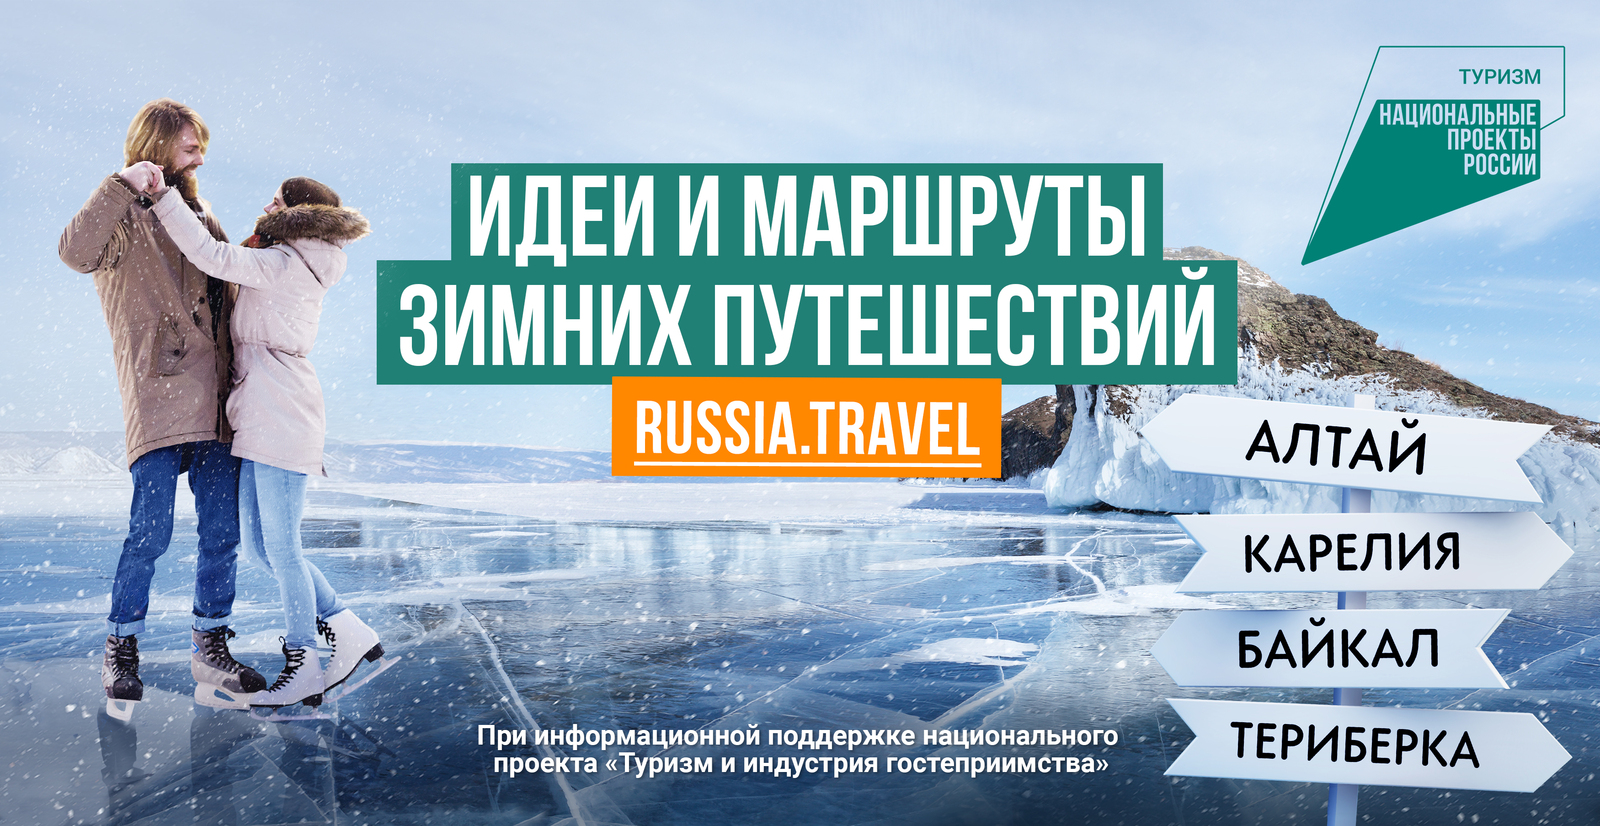 Портал Russia.Travel подготовил более 40 вариантов для путешествий в зимний сезон